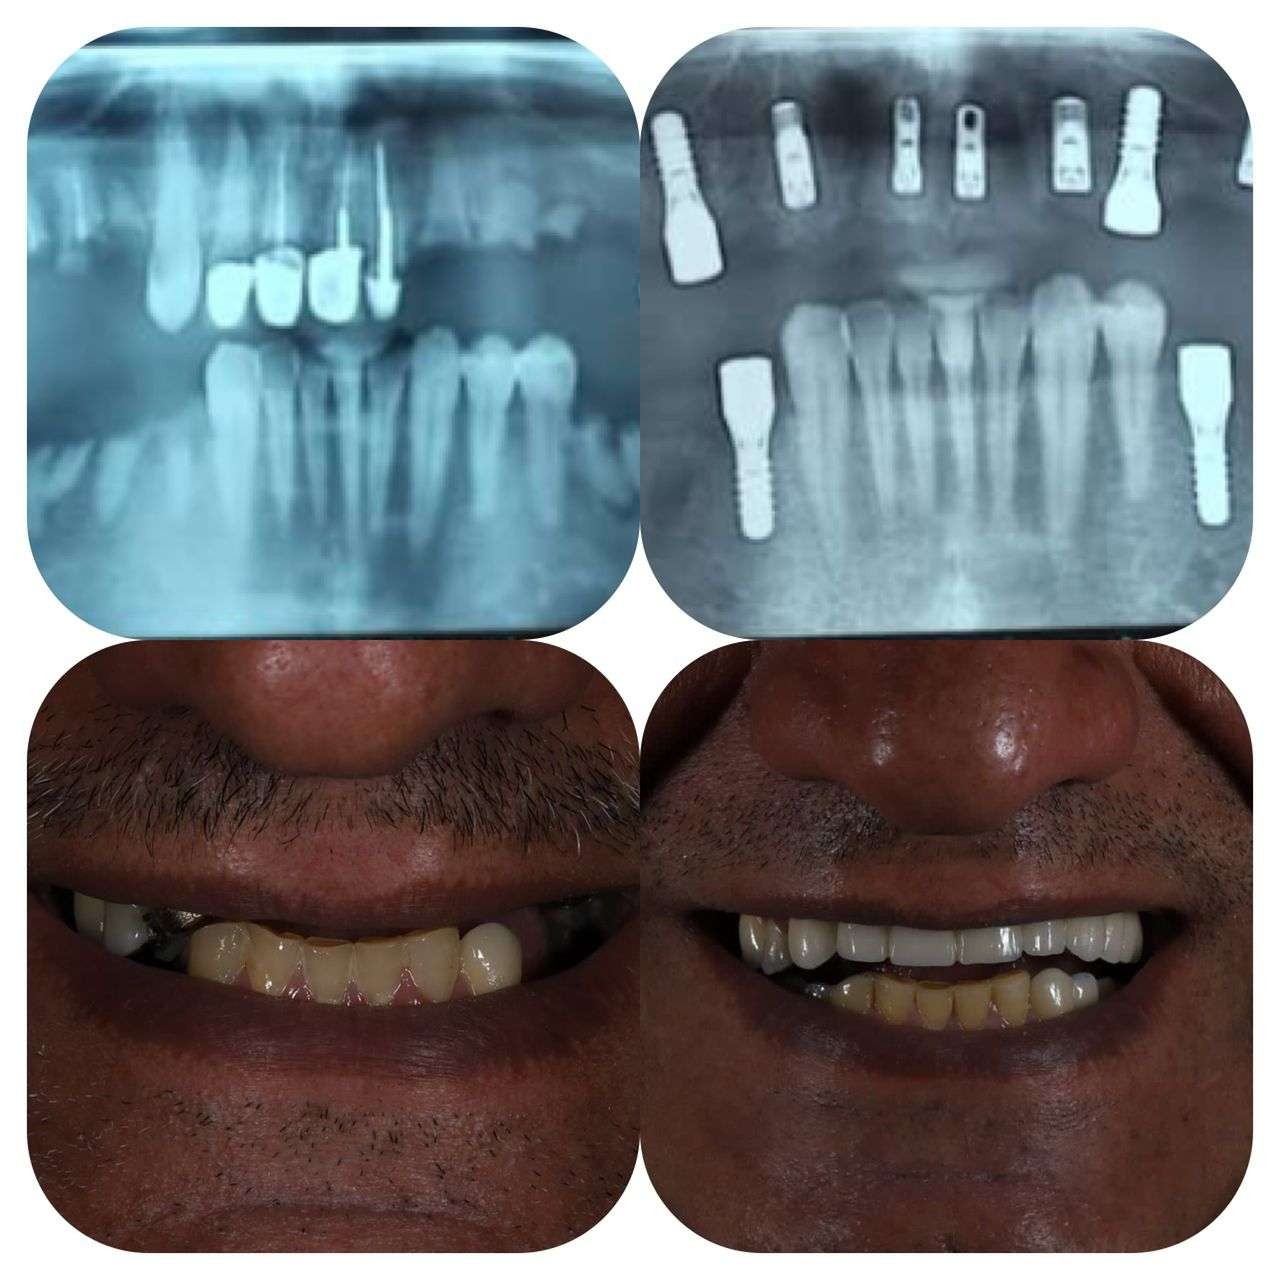 نمونه کار ایمپلنت دندان | دکتر مهران دانشمند متخصص ایمپلنت در شهرکرد